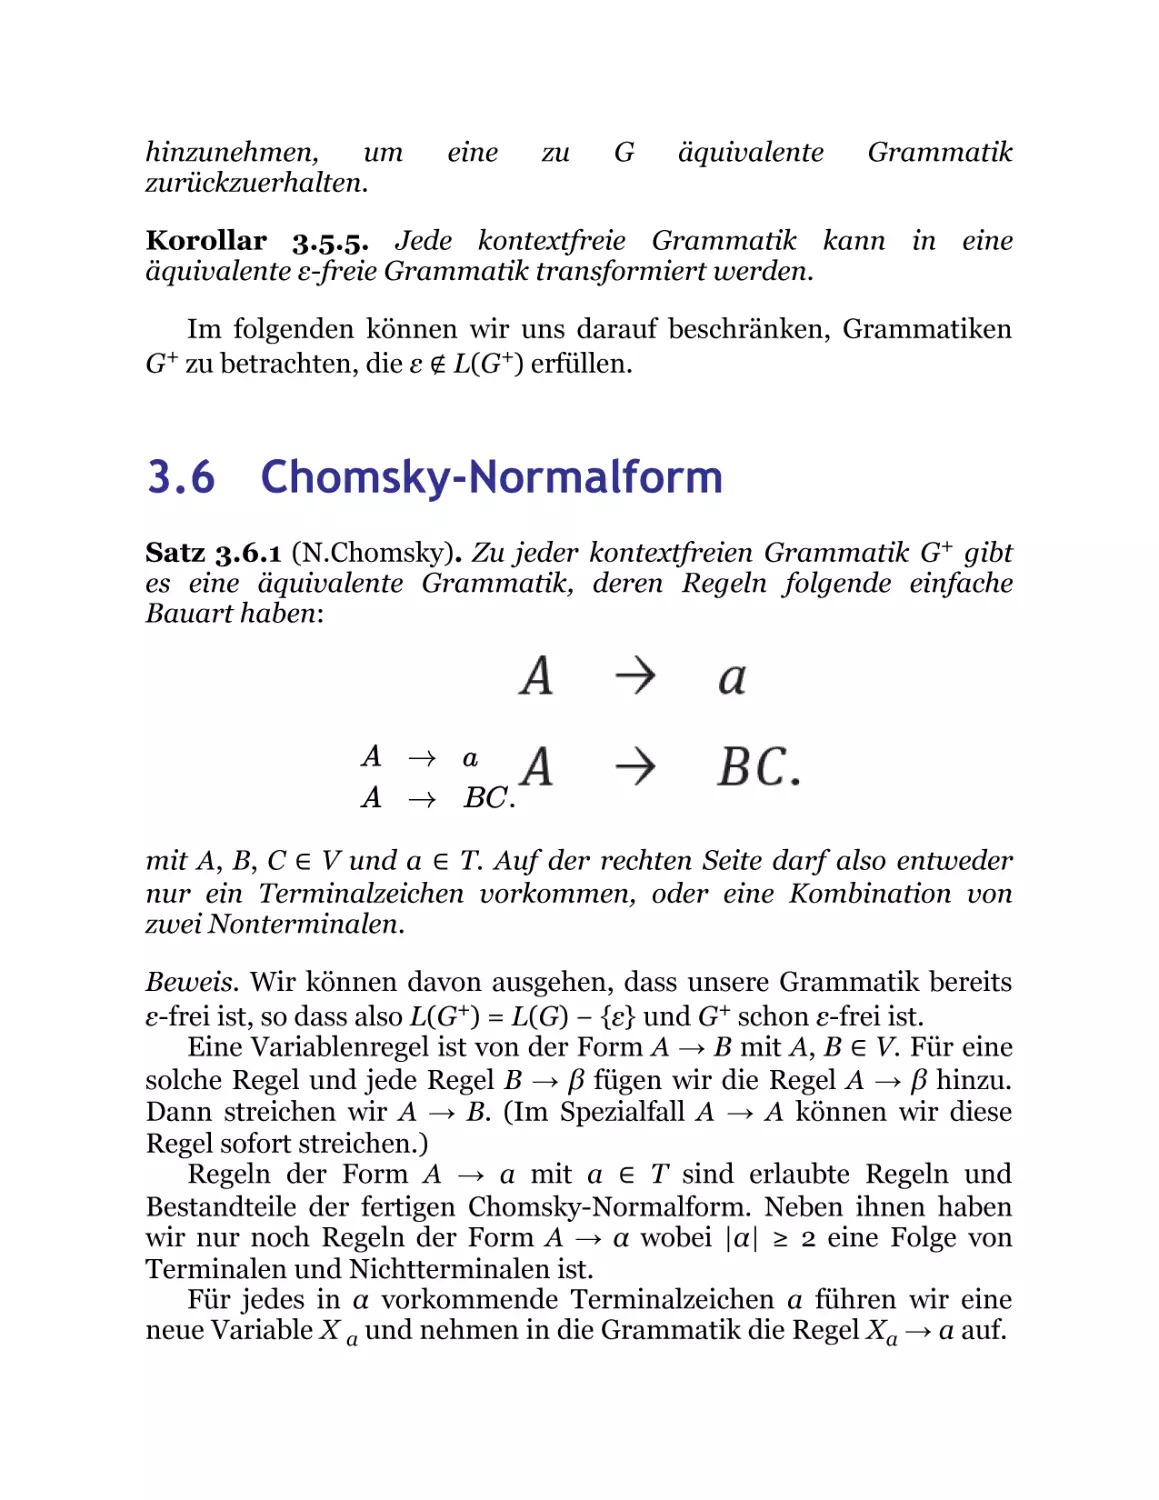 3.6 Chomsky-Normalform